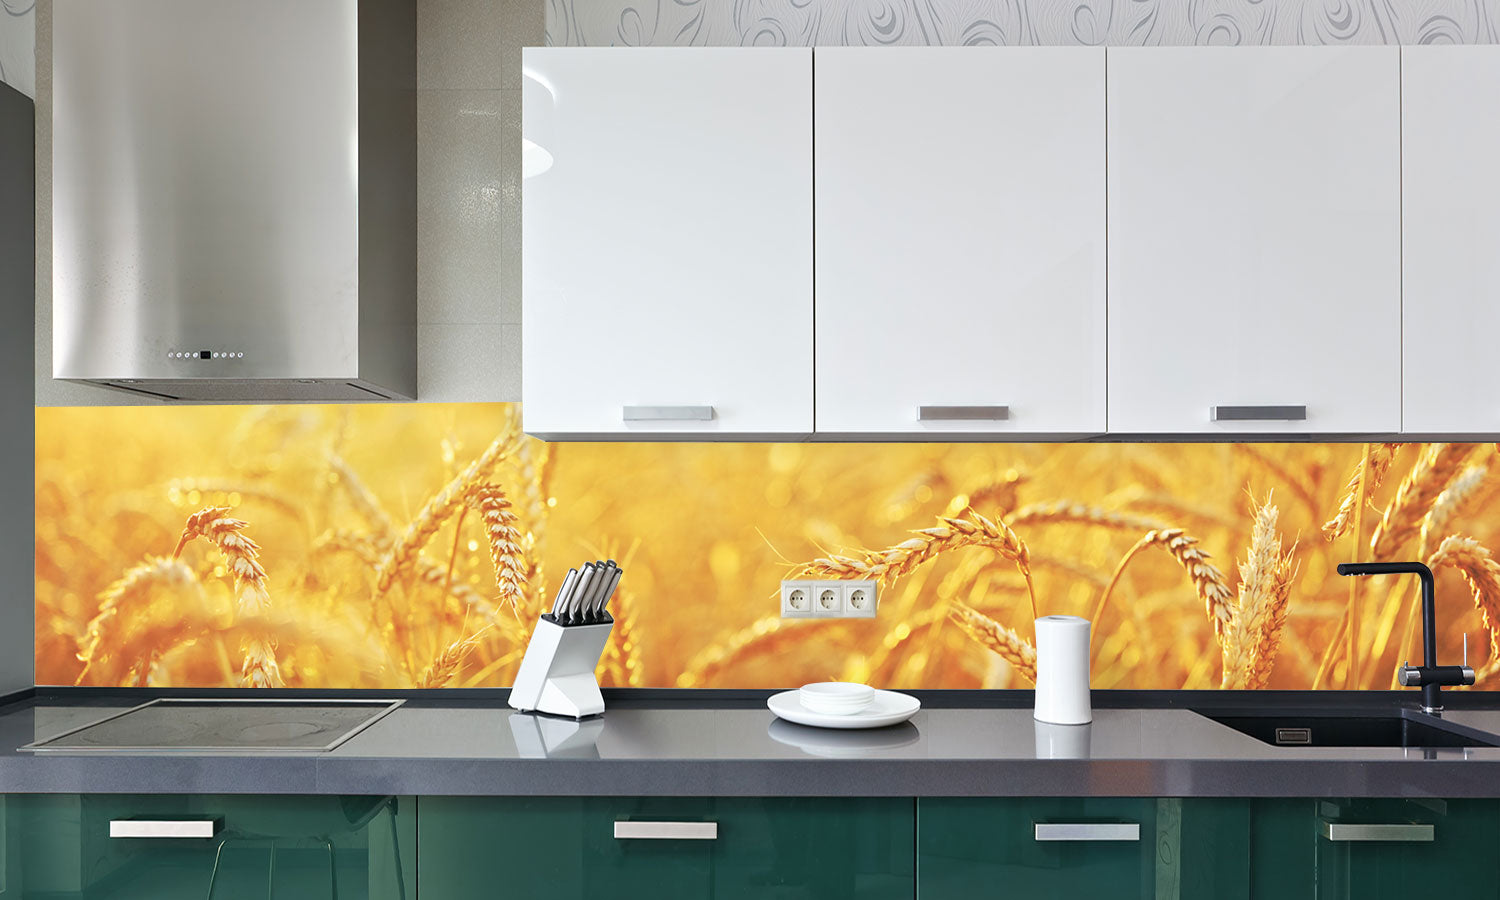 Kuhinjski paneli  Wheat field - Stekleni / PVC plošče / Pleksi steklo - s tiskom za kuhinjo, Stenske obloge PKU017 - Life-decor.si